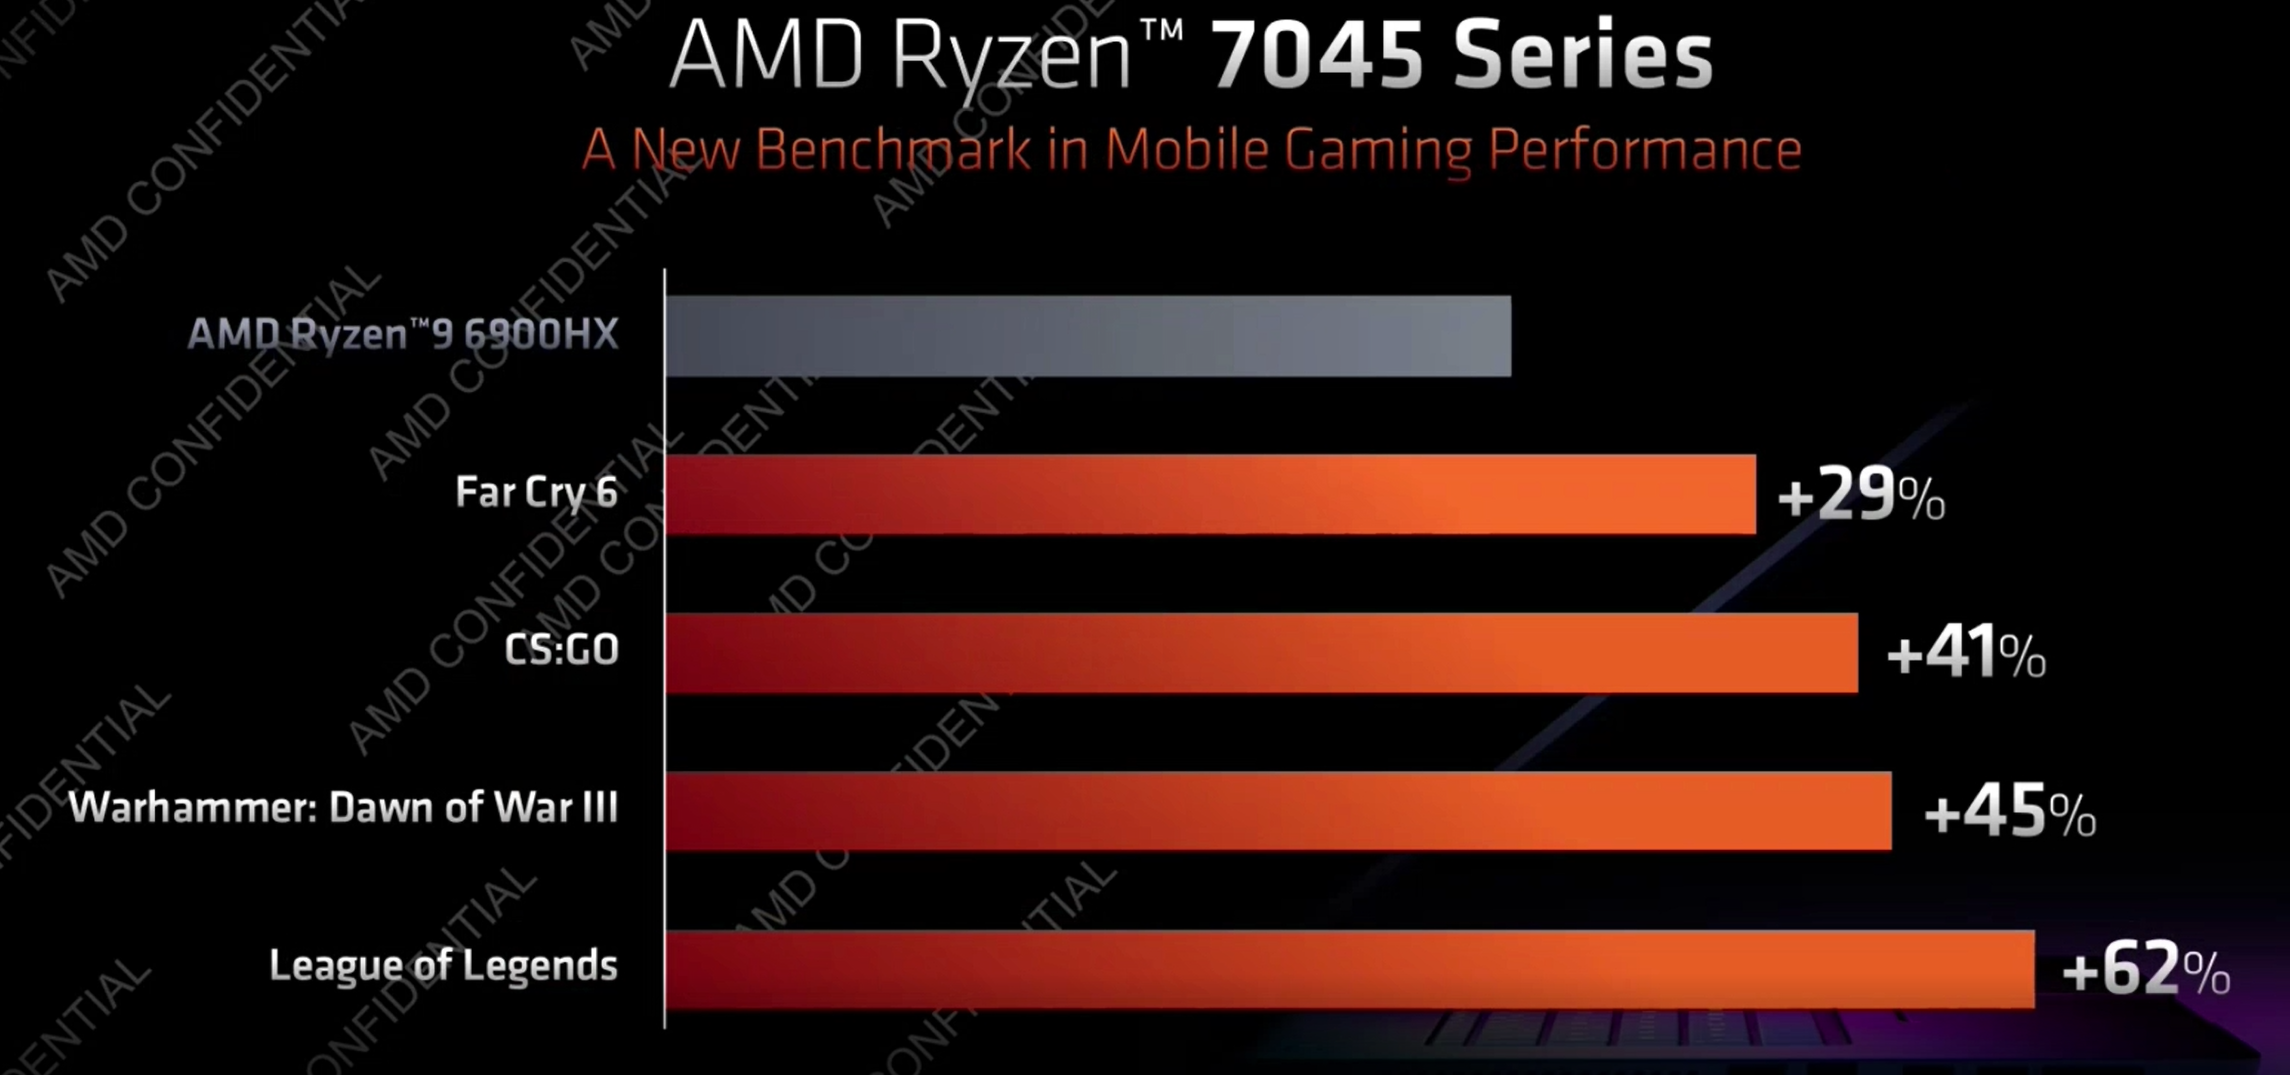 AMD Ryzen 7045 mobil sorozat játék